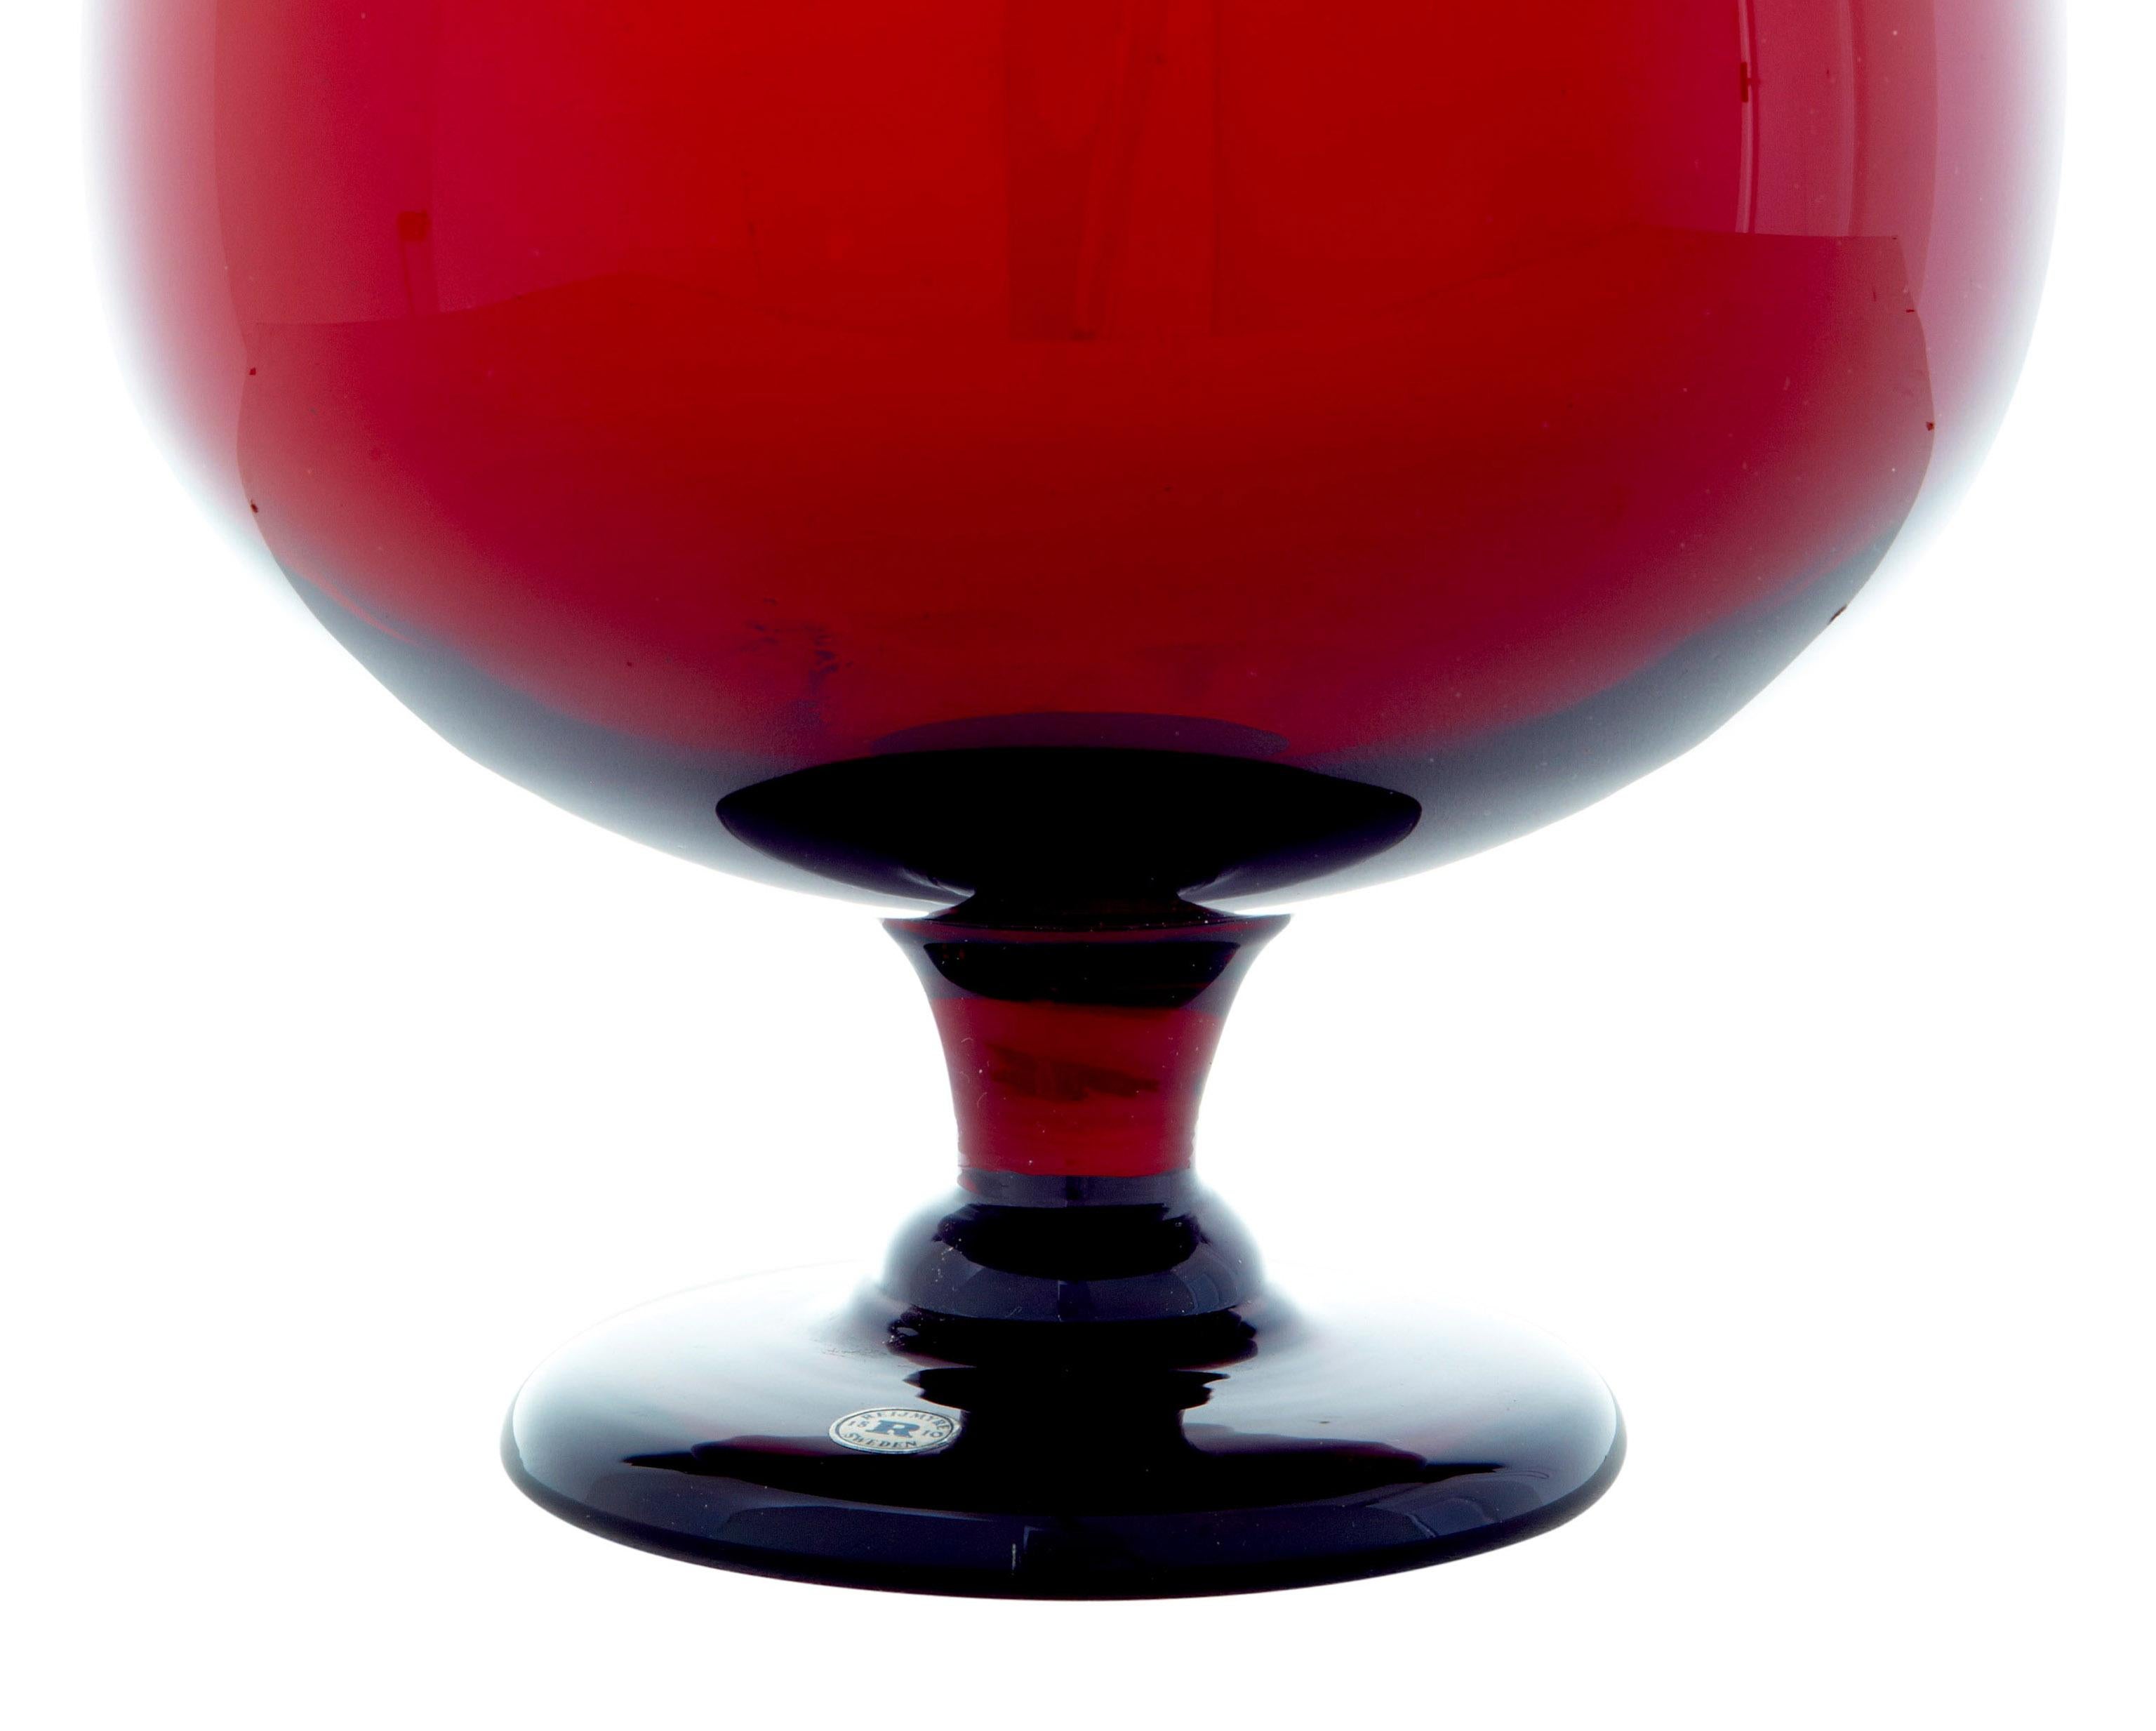 Rote Kunstglasvase von Monica Bratt aus dem 20. Jahrhundert, ca. 1950.

Wir bieten hier eine schöne Vase der schwedischen Designerin Monica Bratt Wijkander (1913-1961) an. Geformt wie ein großes Weinglas. Gefertigt in ihrem Lieblings-Tiefrot.

Ideal